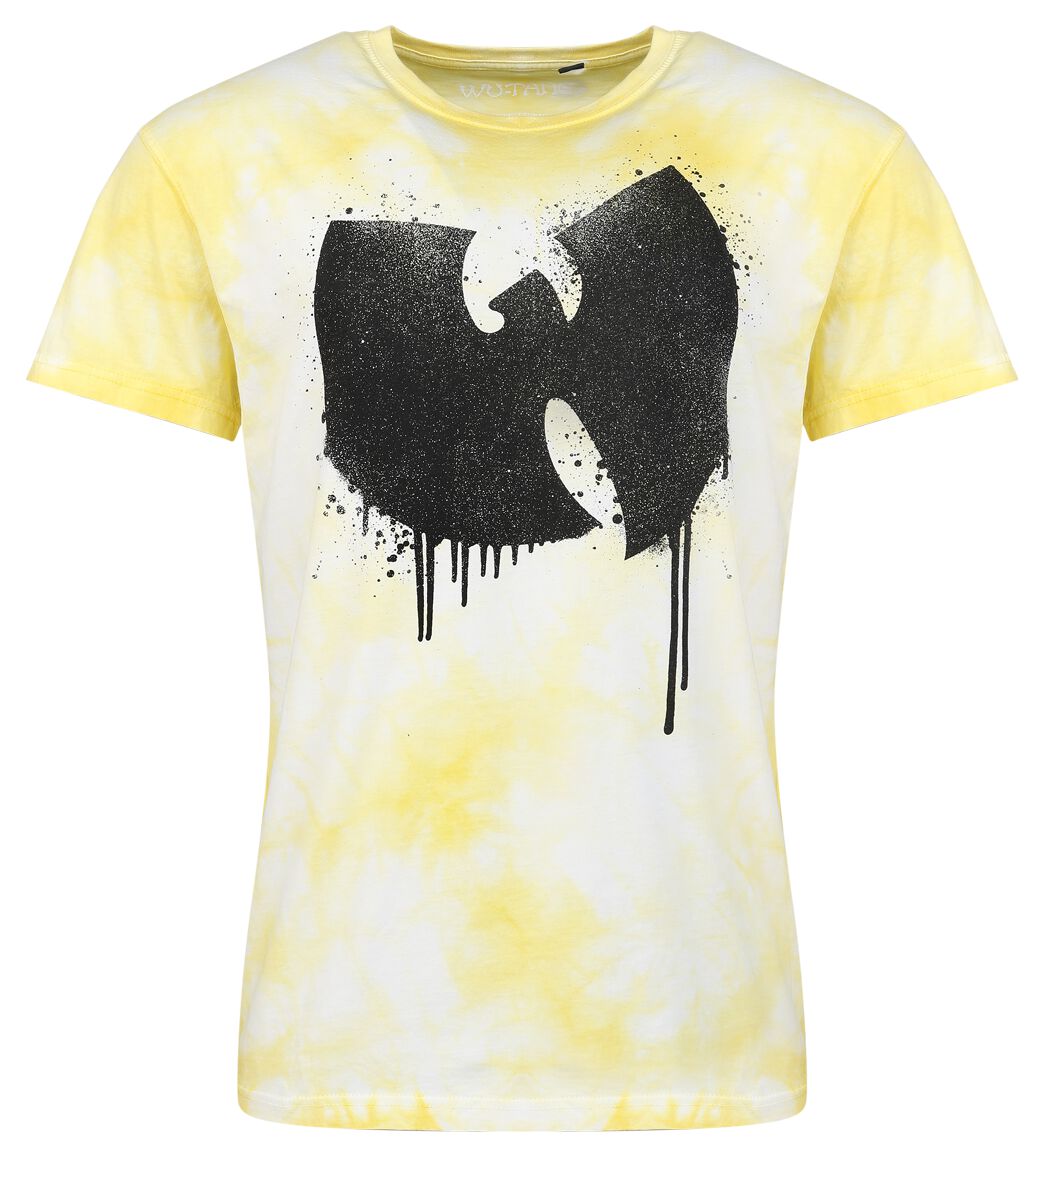 Wu-Tang Clan T-Shirt - ANTFW - S bis 3XL - für Männer - Größe XL - gelb  - Lizenziertes Merchandise!